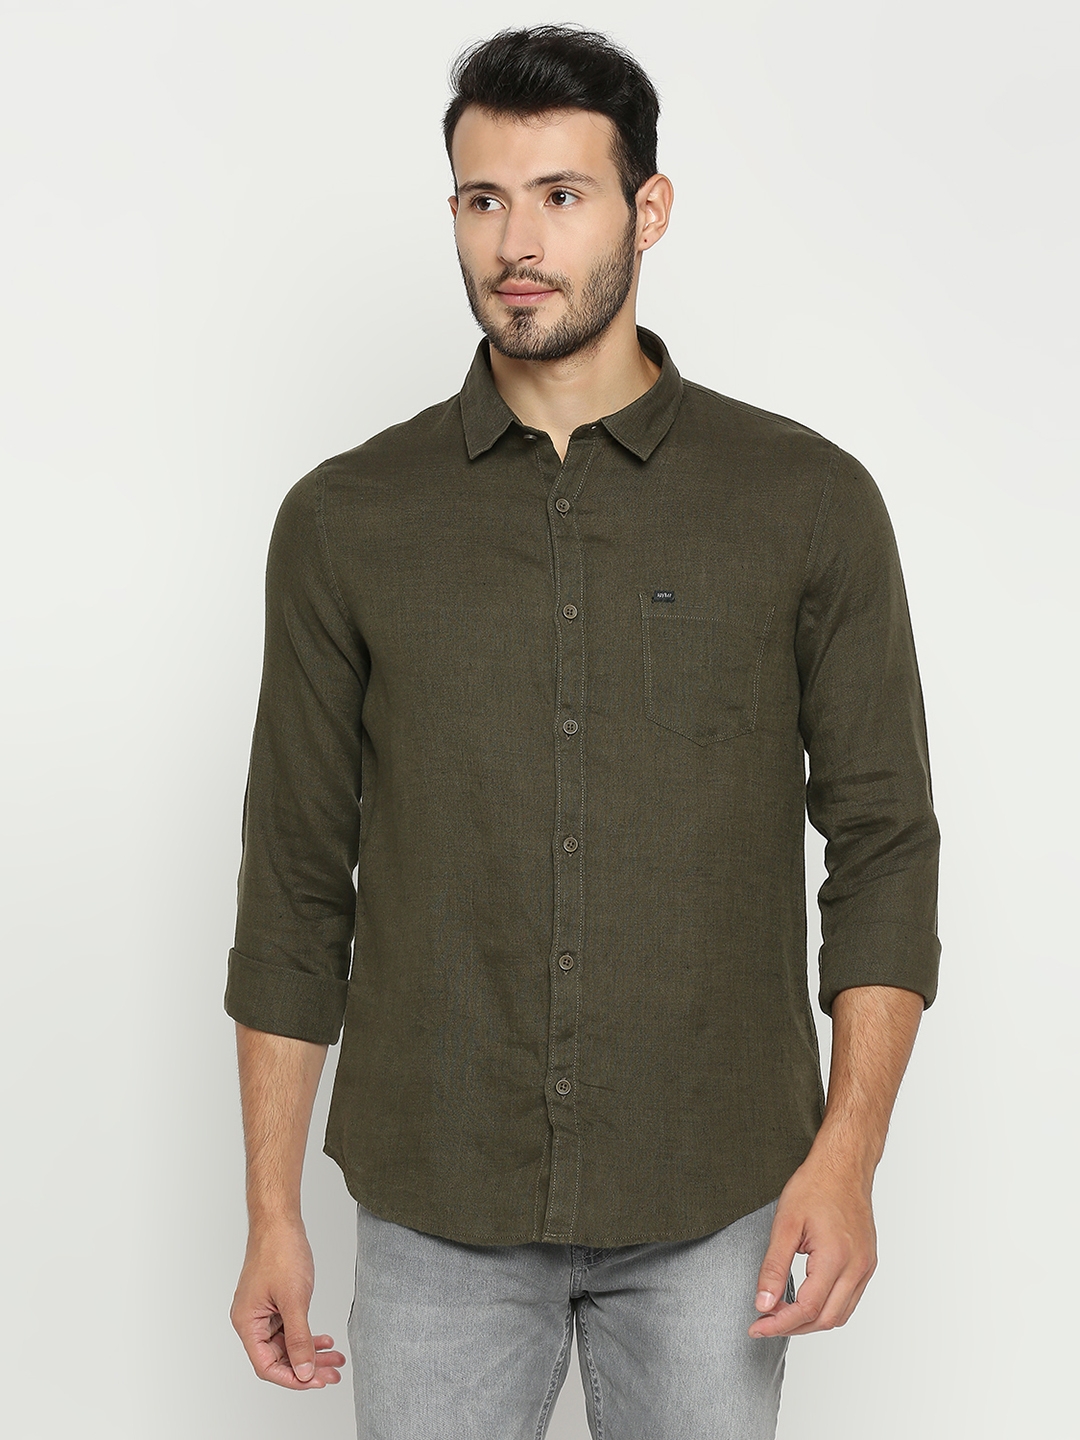 Spykar | Spykar Olive Green Cotton Full Sleeve Plain Shirt For Men